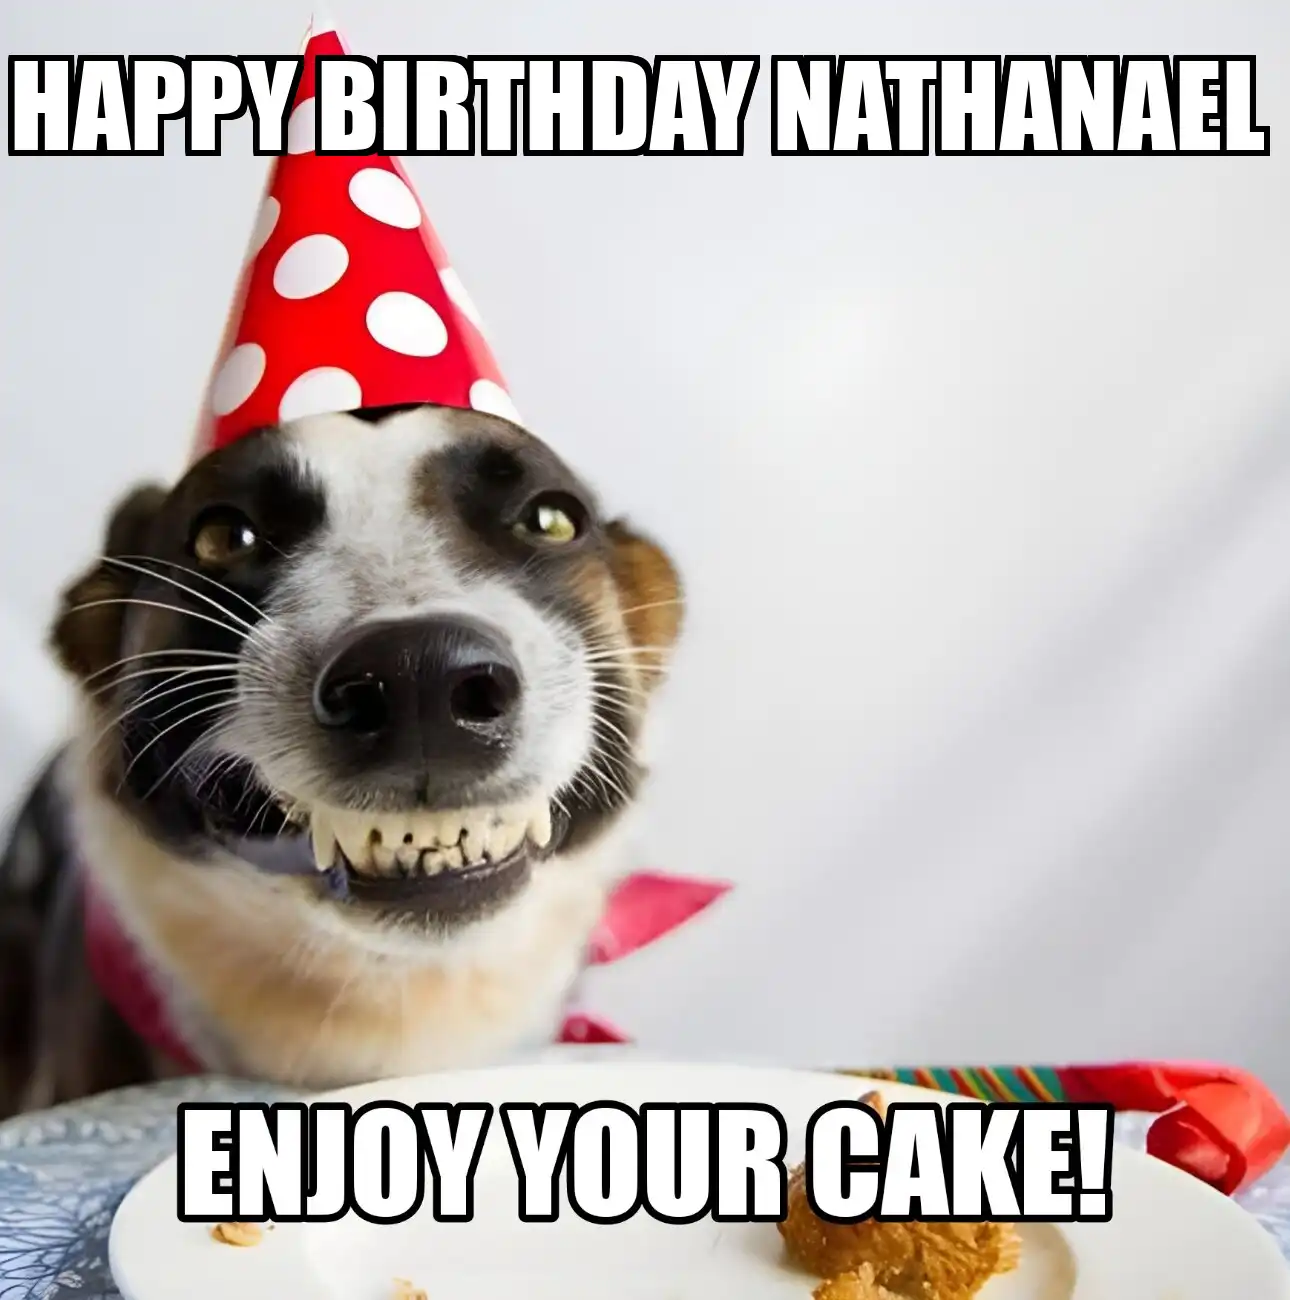 Happy Birthday Nathanael Enjoy Your Cake Dog Meme